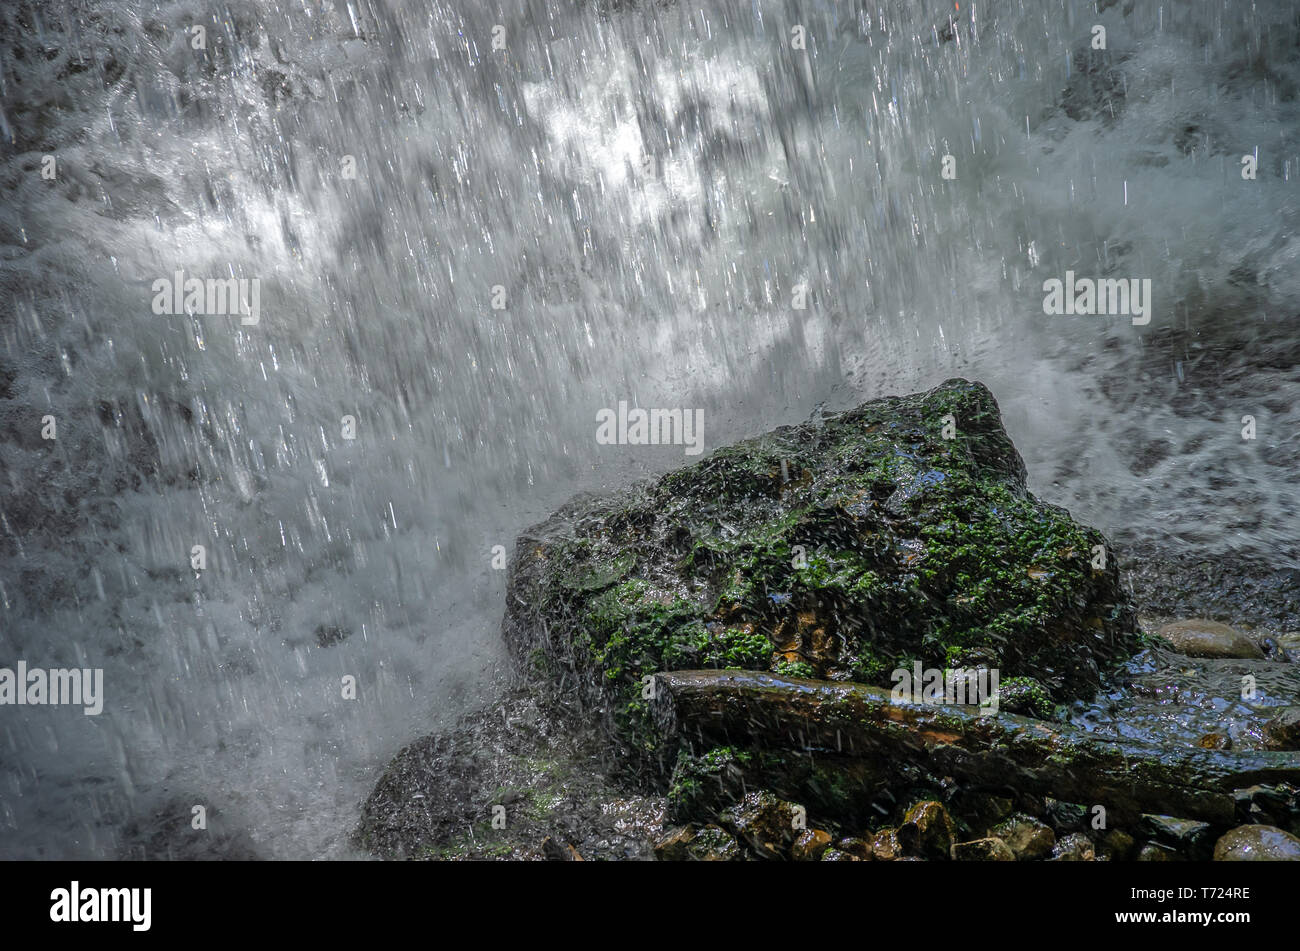 El agua está cayendo en una piedra de musgo verde. Foto de stock